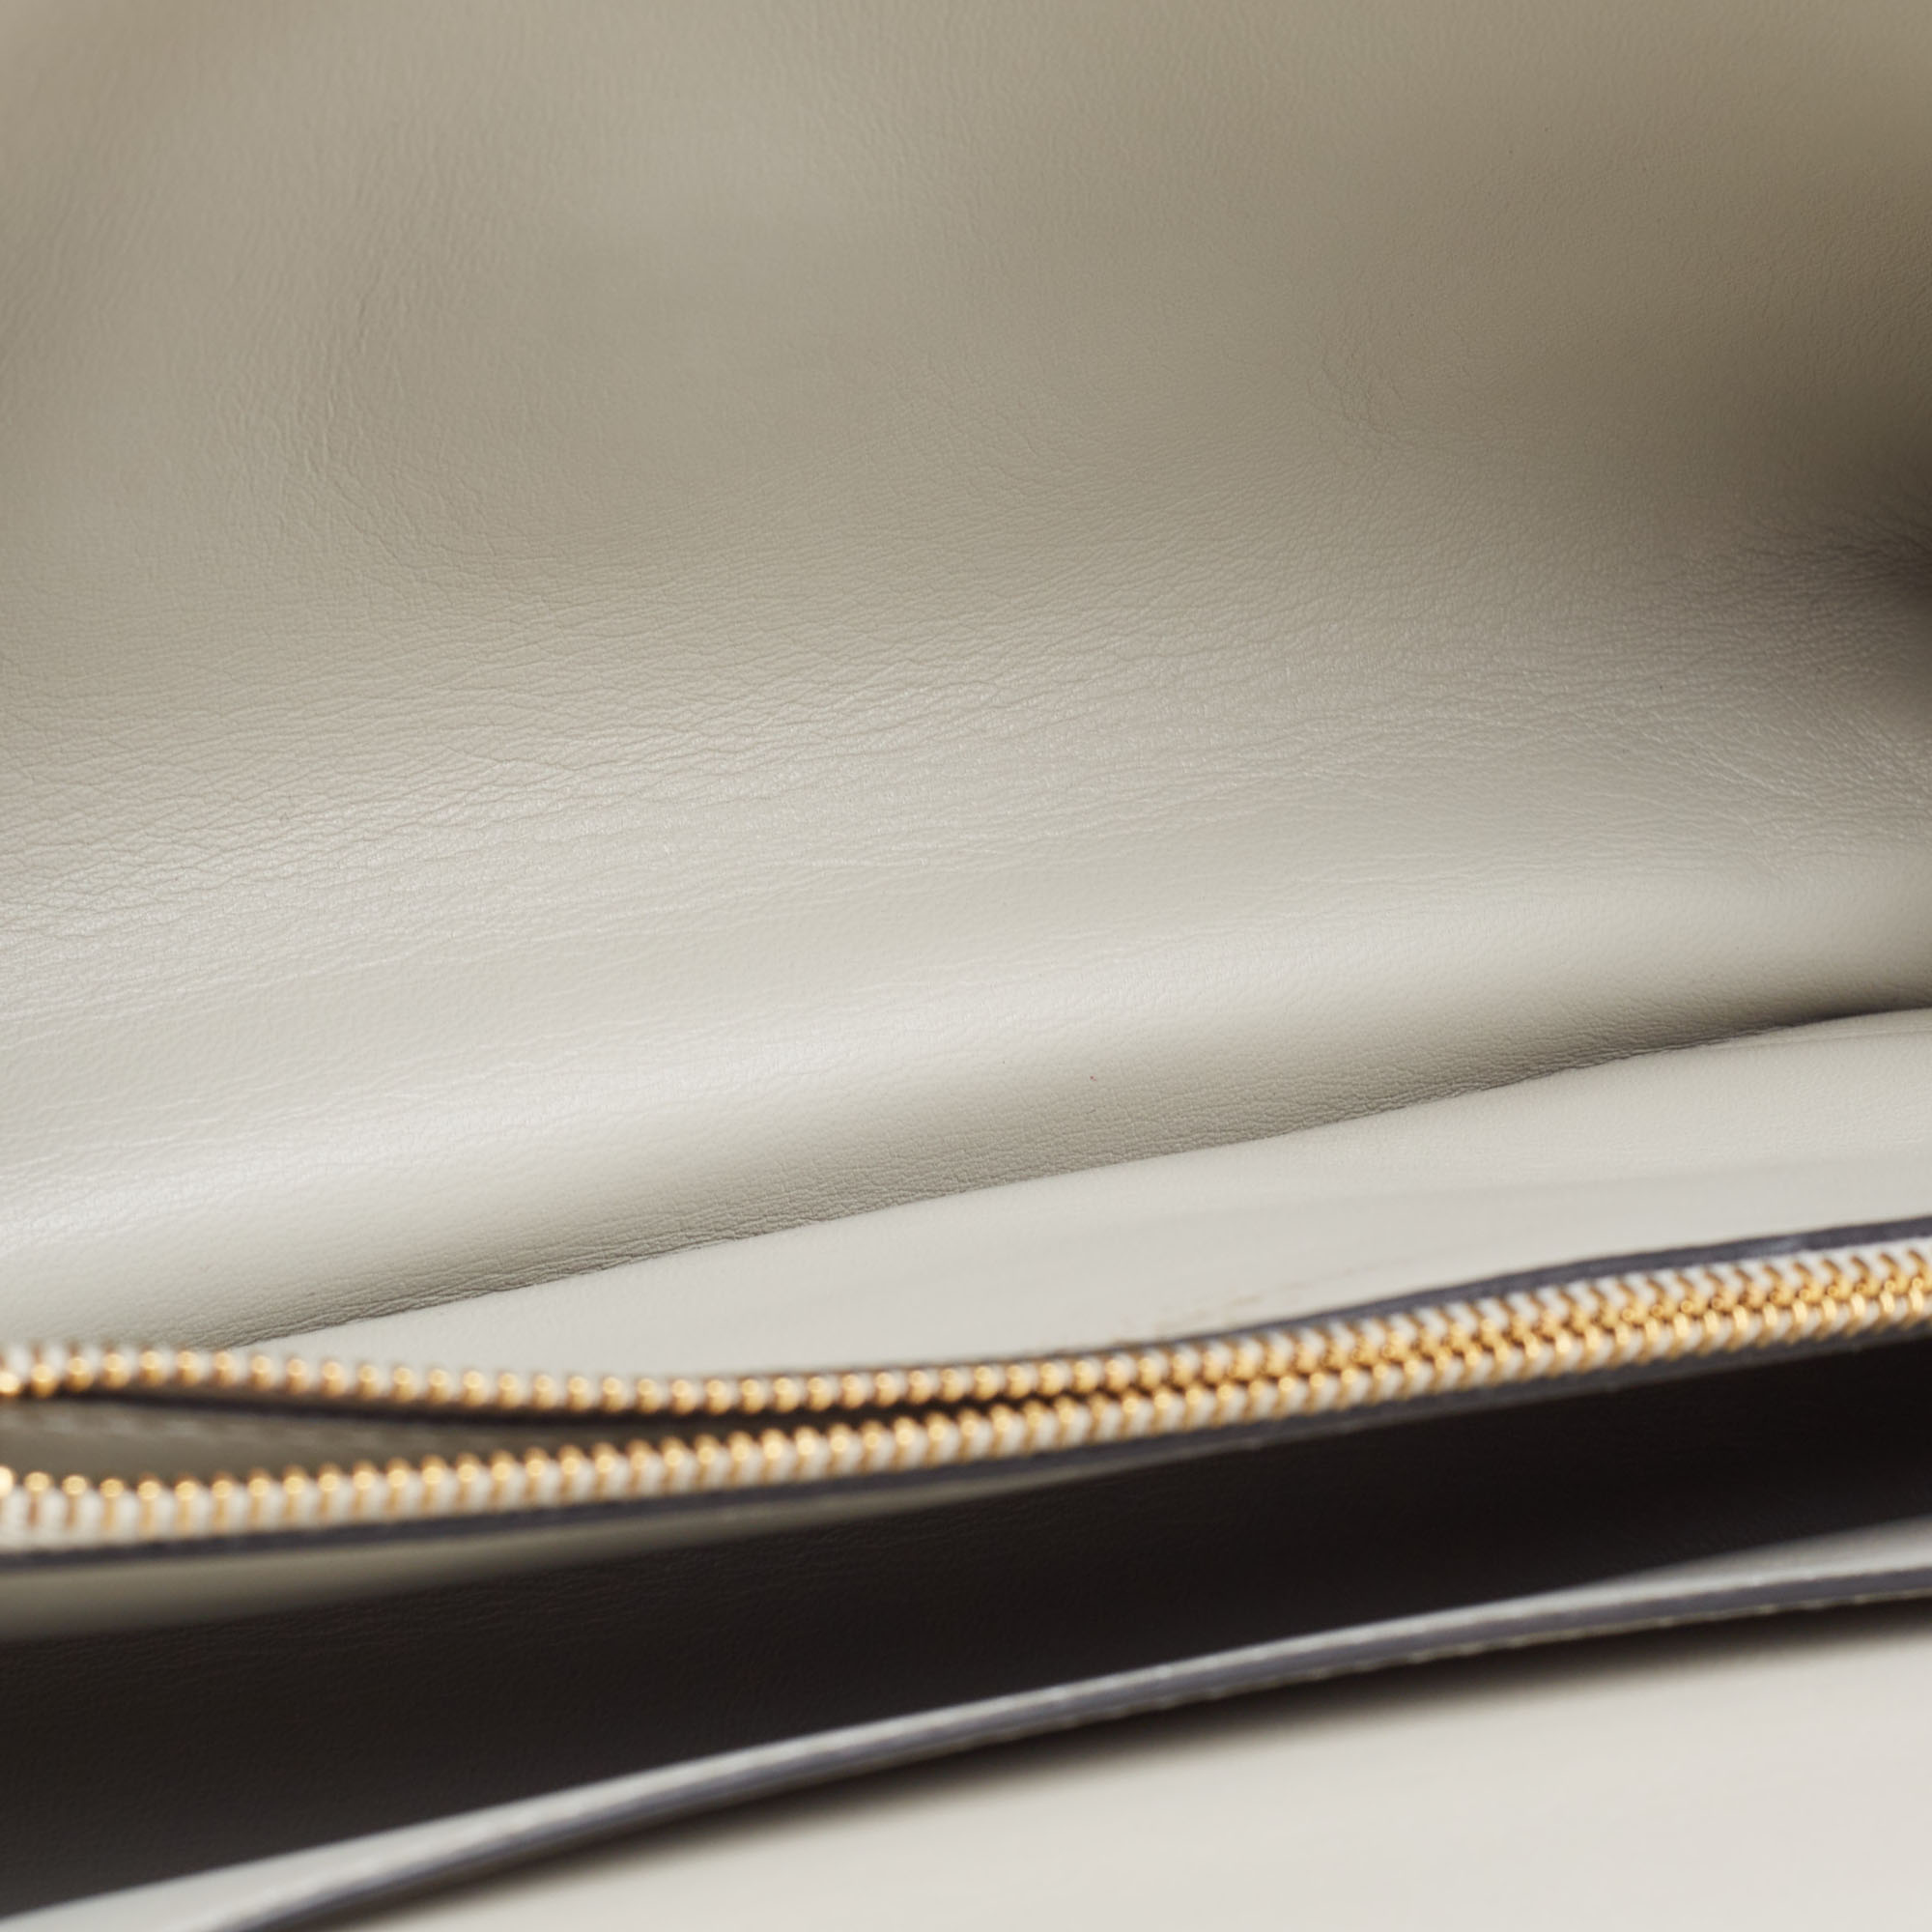 Valentino Ivory Leather Stud Sign Shoulder Bag